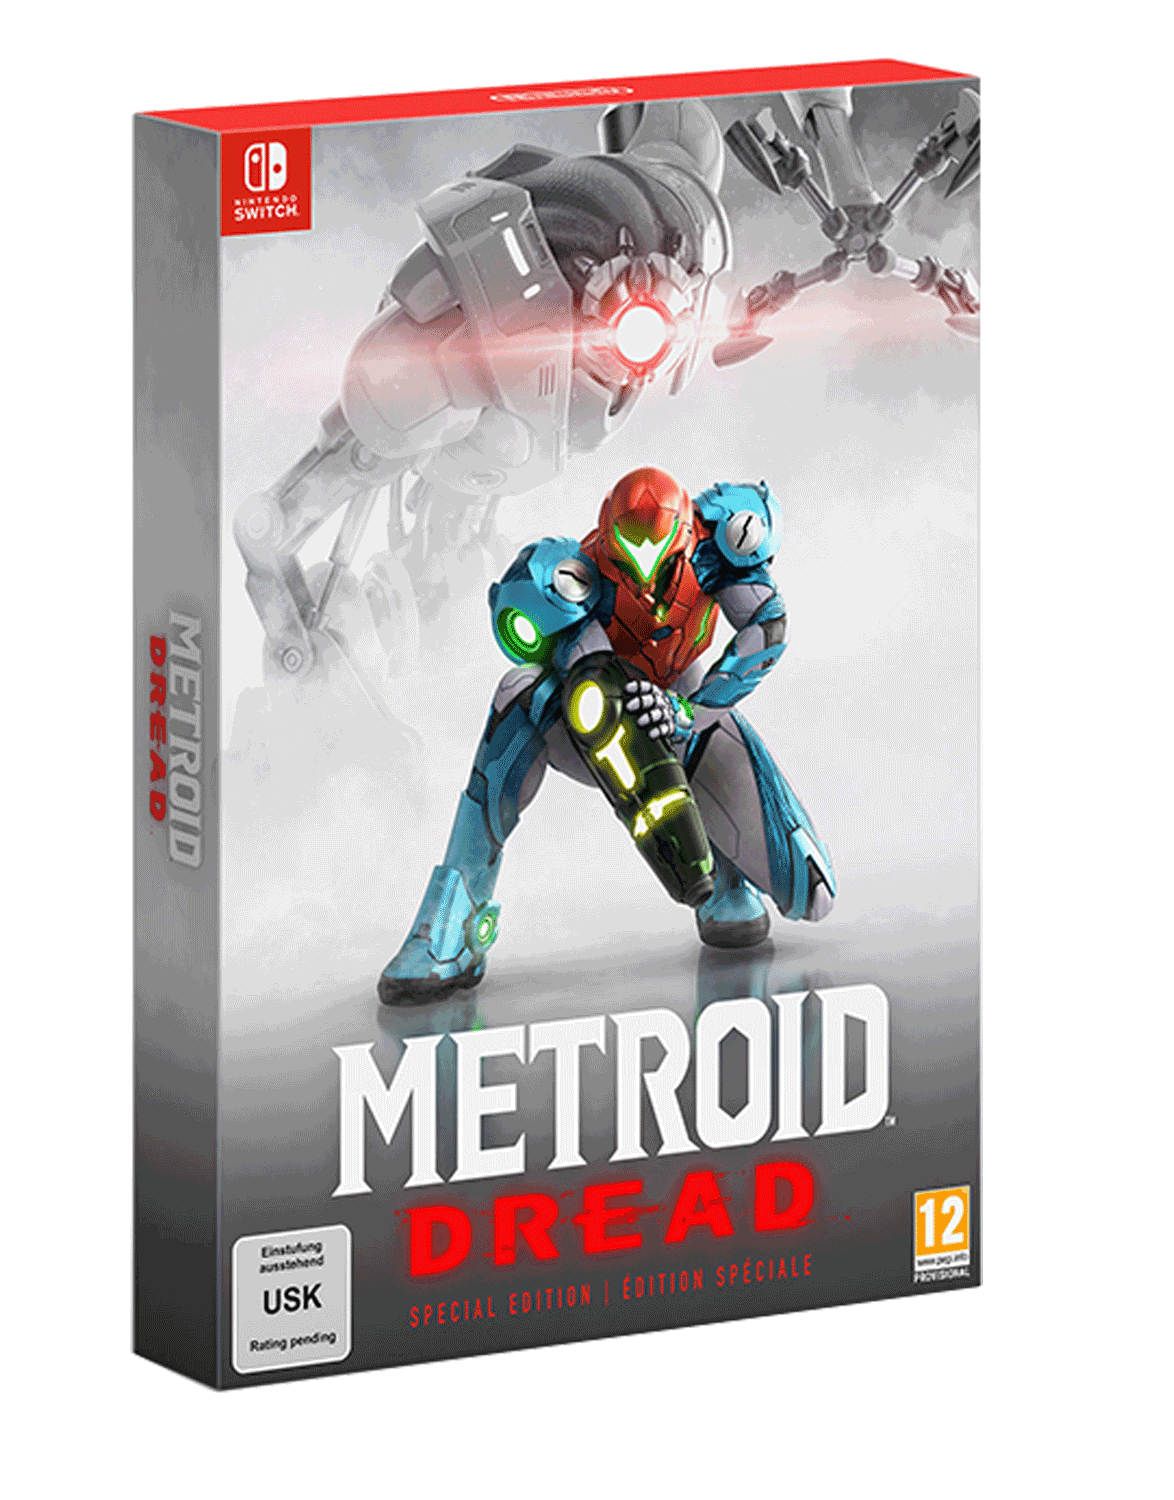 Metroid Dread Nintendo Switch. Metroid Dread обложка. Военные игры на Нинтендо свитч. Игра для Switch Metroid Dread Special Edition (русская версия) обложка.